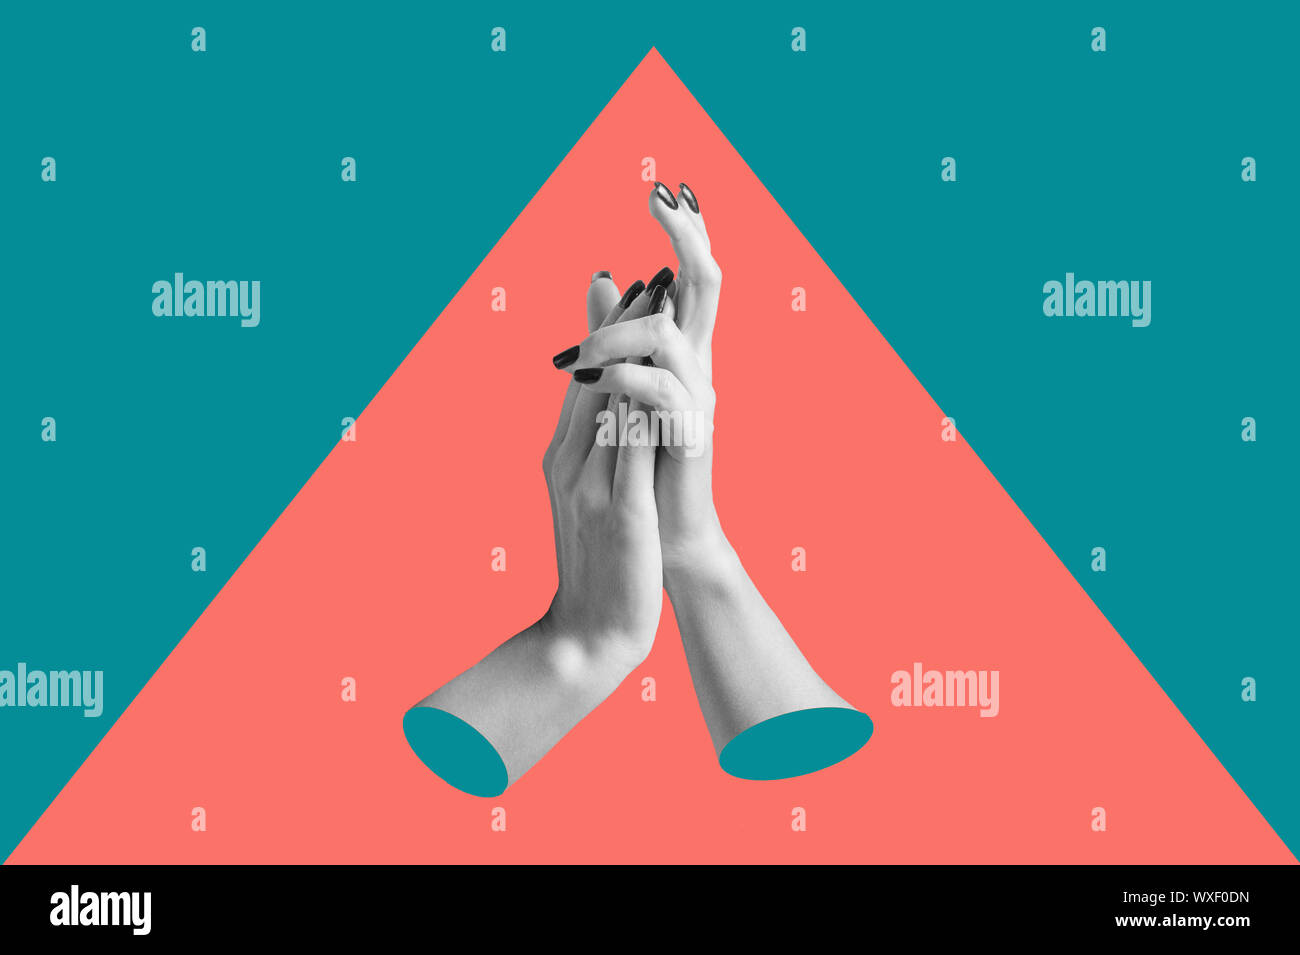 L'art conceptuel moderne poster avec une main dans un style massurrealism. Collage de l'art contemporain. Banque D'Images